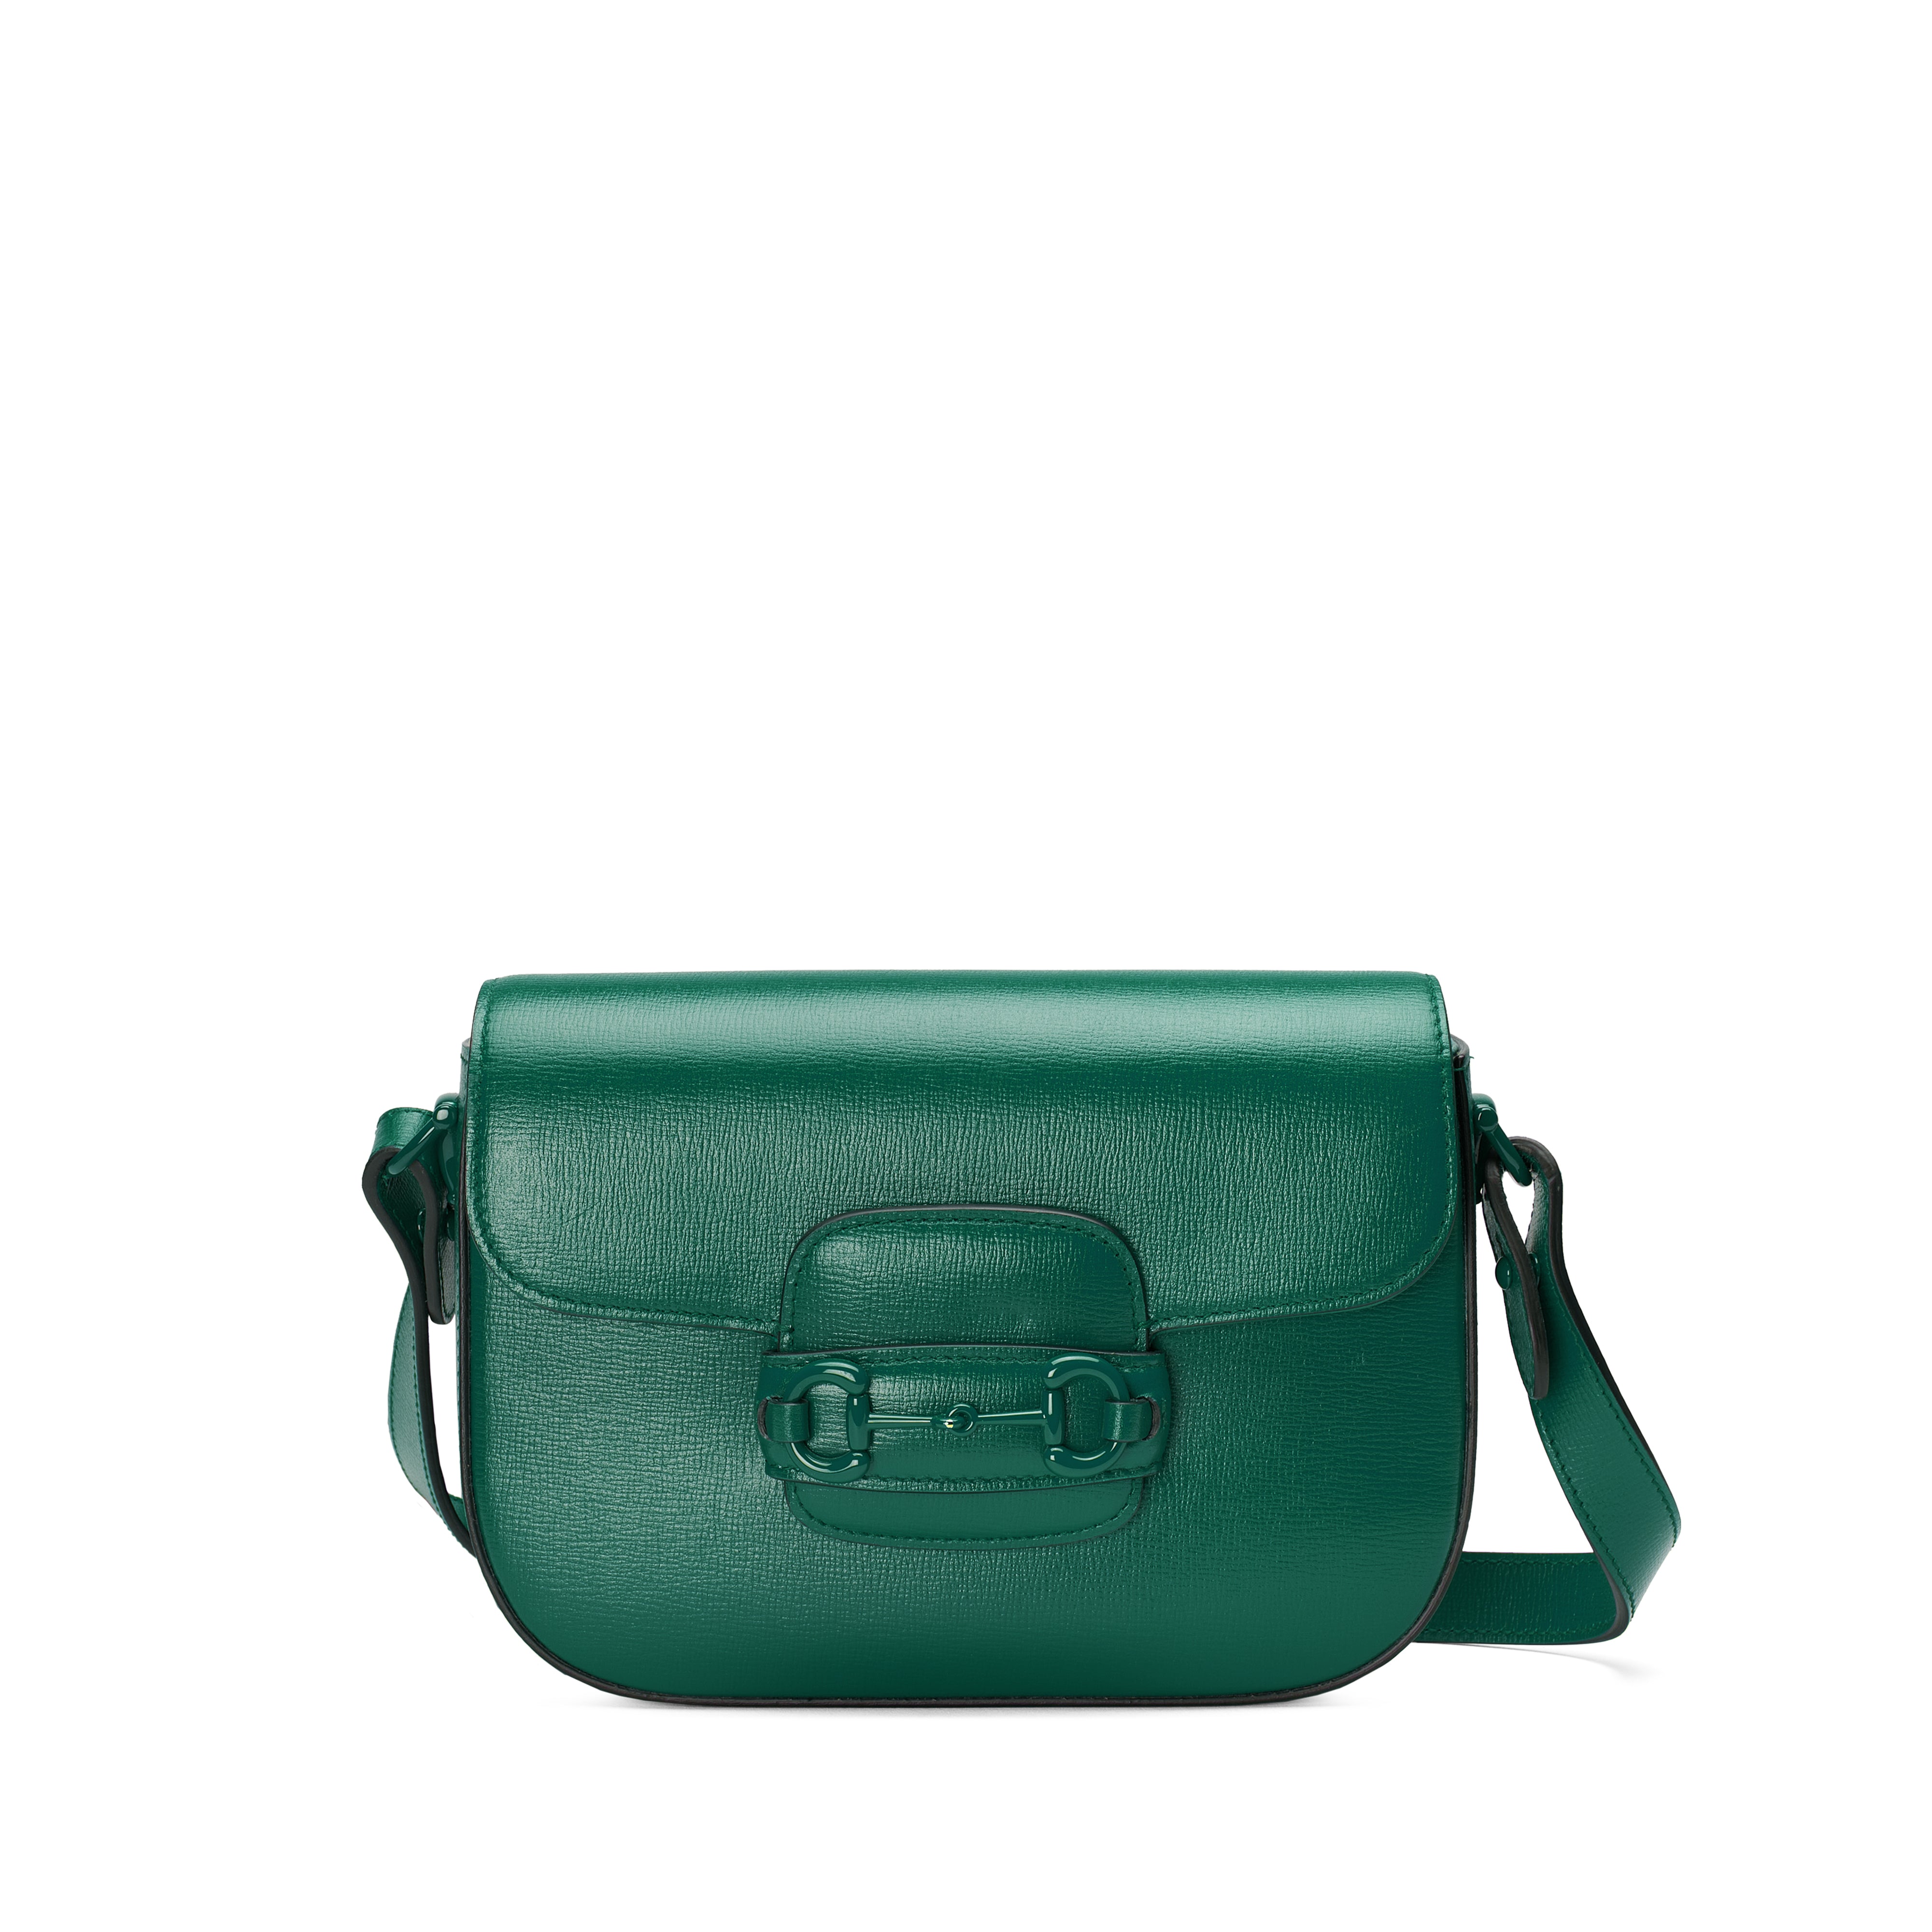 MONTBUI 1960 Green Shoulder Bag / Handbag (CLN-44 LOC. Y-2)